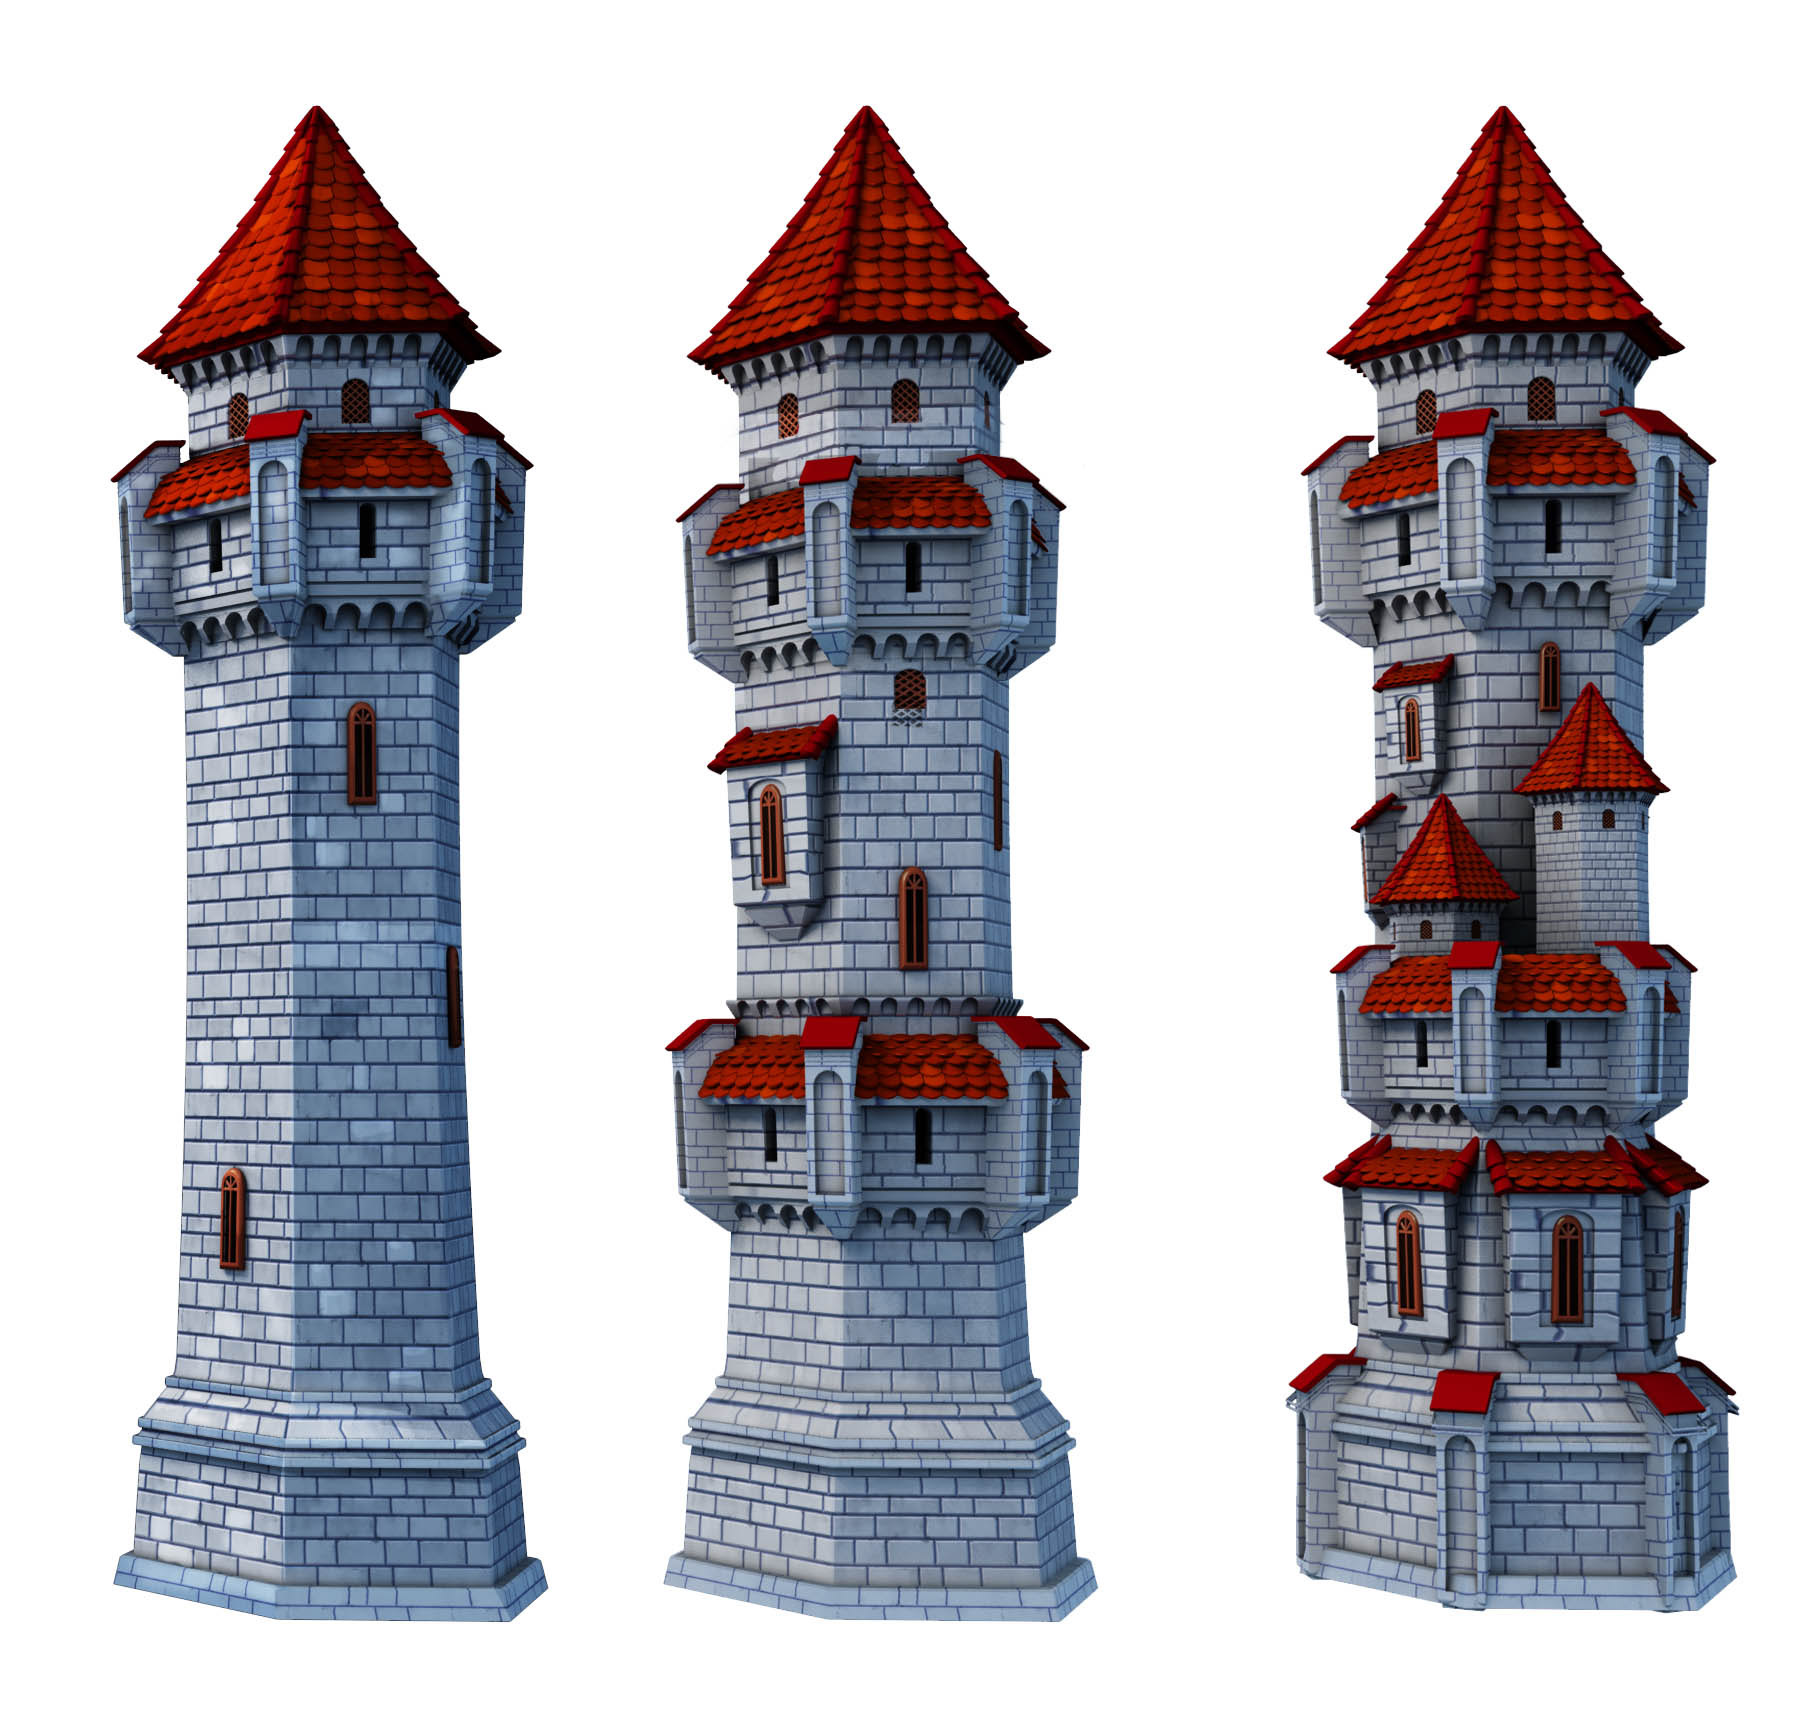 Референс Средневековая башня